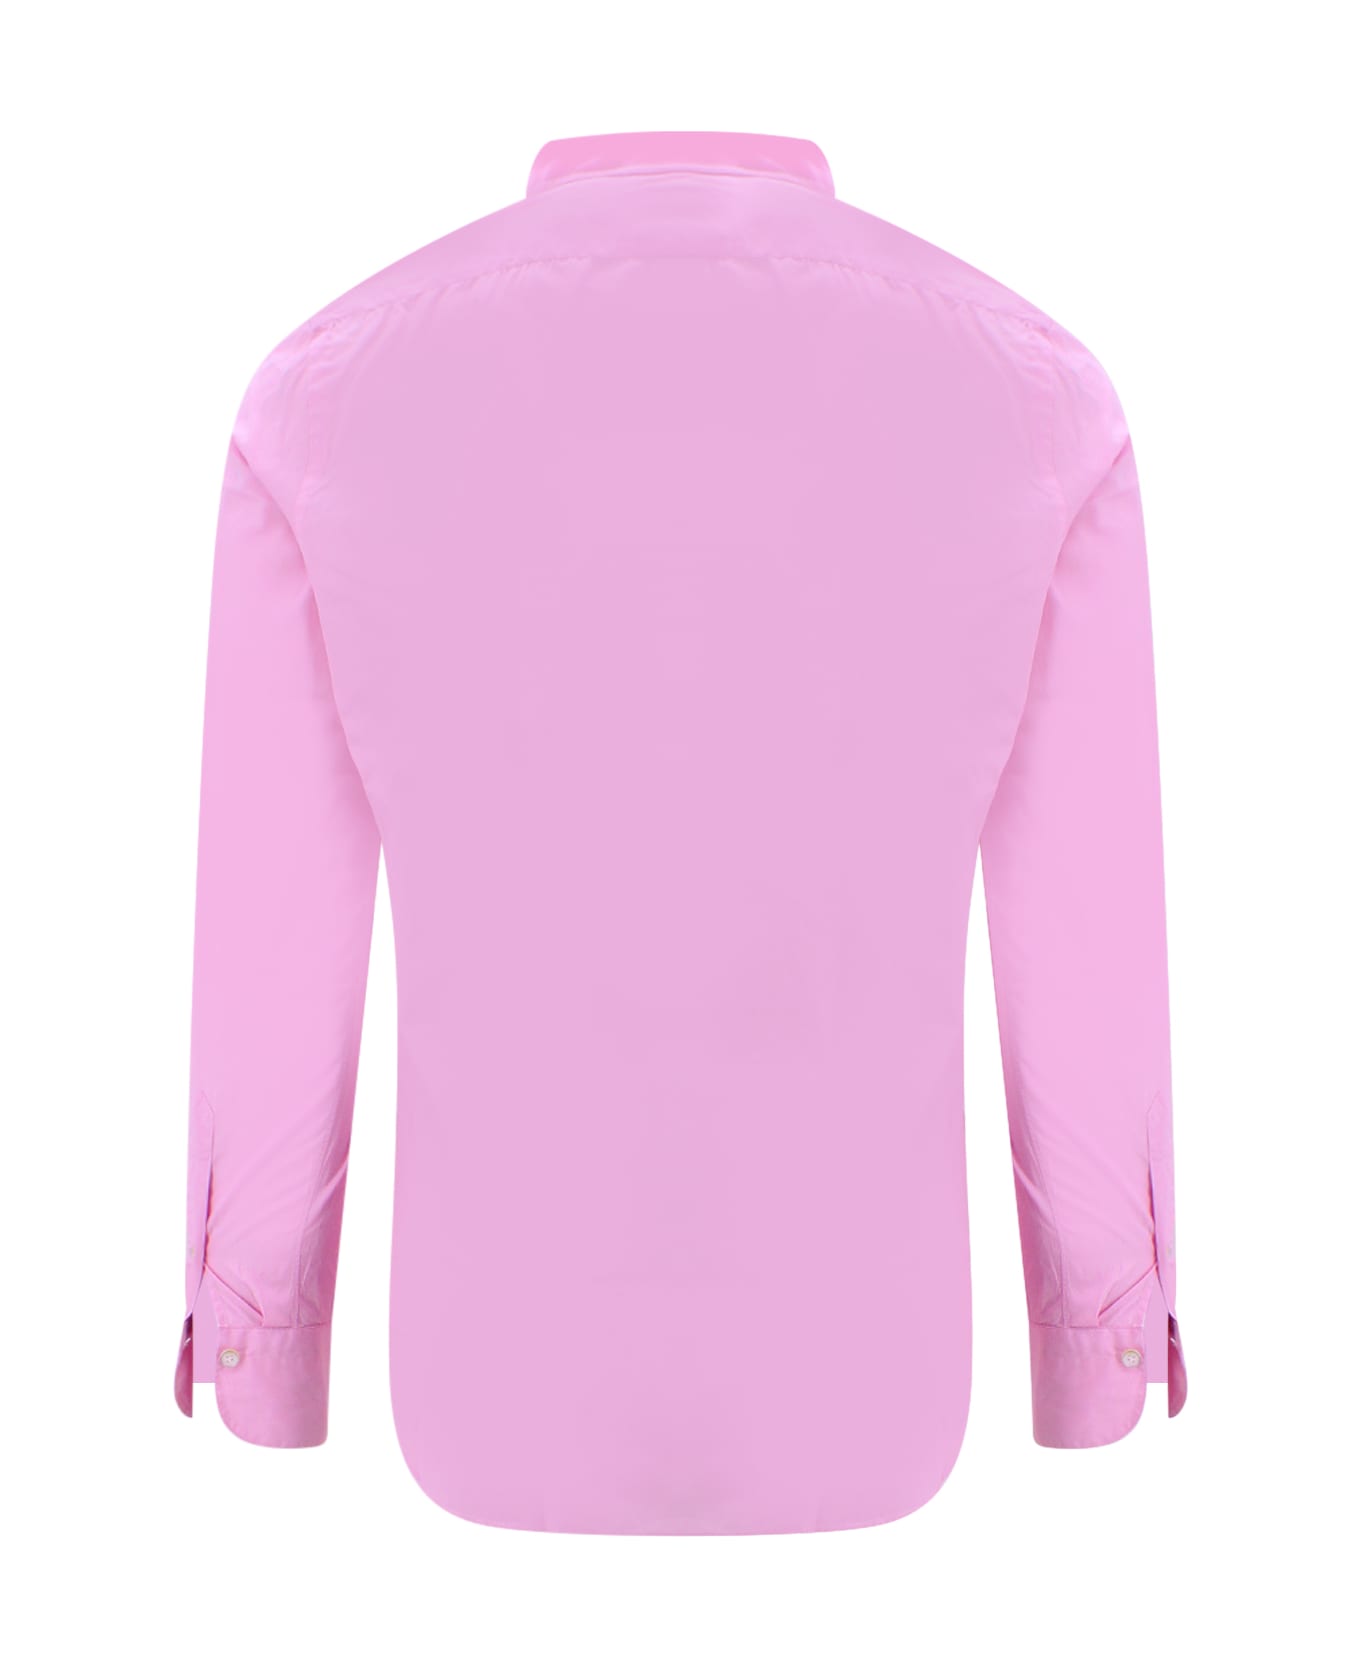 Finamore Shirt - Pink